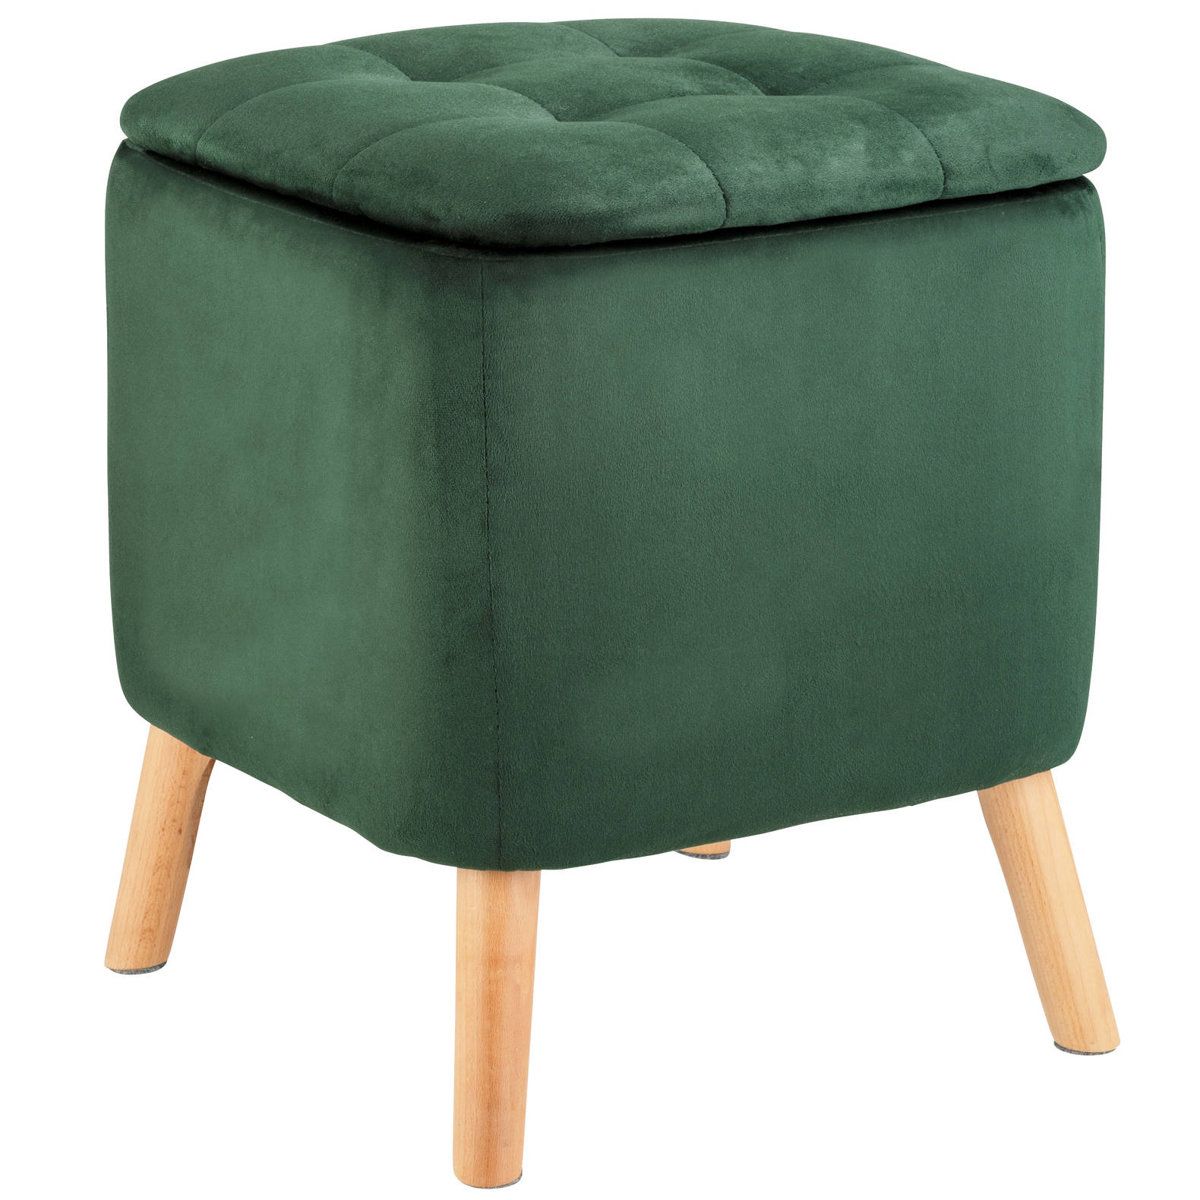 Stolička do obývacího pokoje EMMA, zelená, 42,5 cm, WENKO - EDAXO.CZ s.r.o.